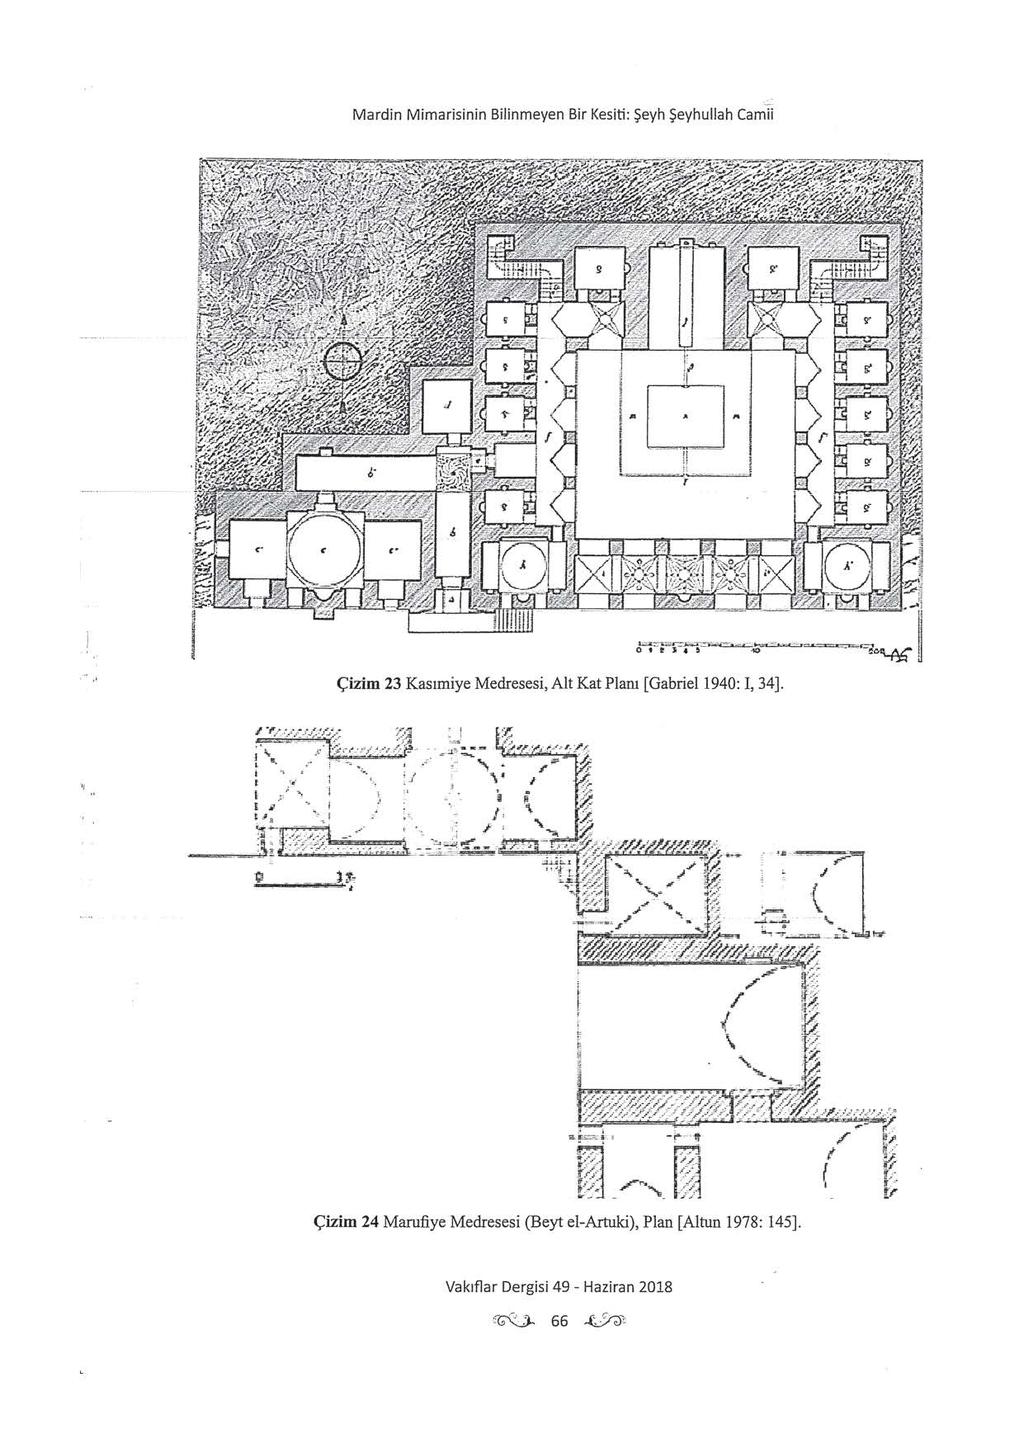 Mardin Mimarisinin Bilinmeyen Bir Kesiti: Şeyh Şeyhullah Camii Çizim 23 Kasımiye Medresesi, Alt Kat Planı (Gabriell940: